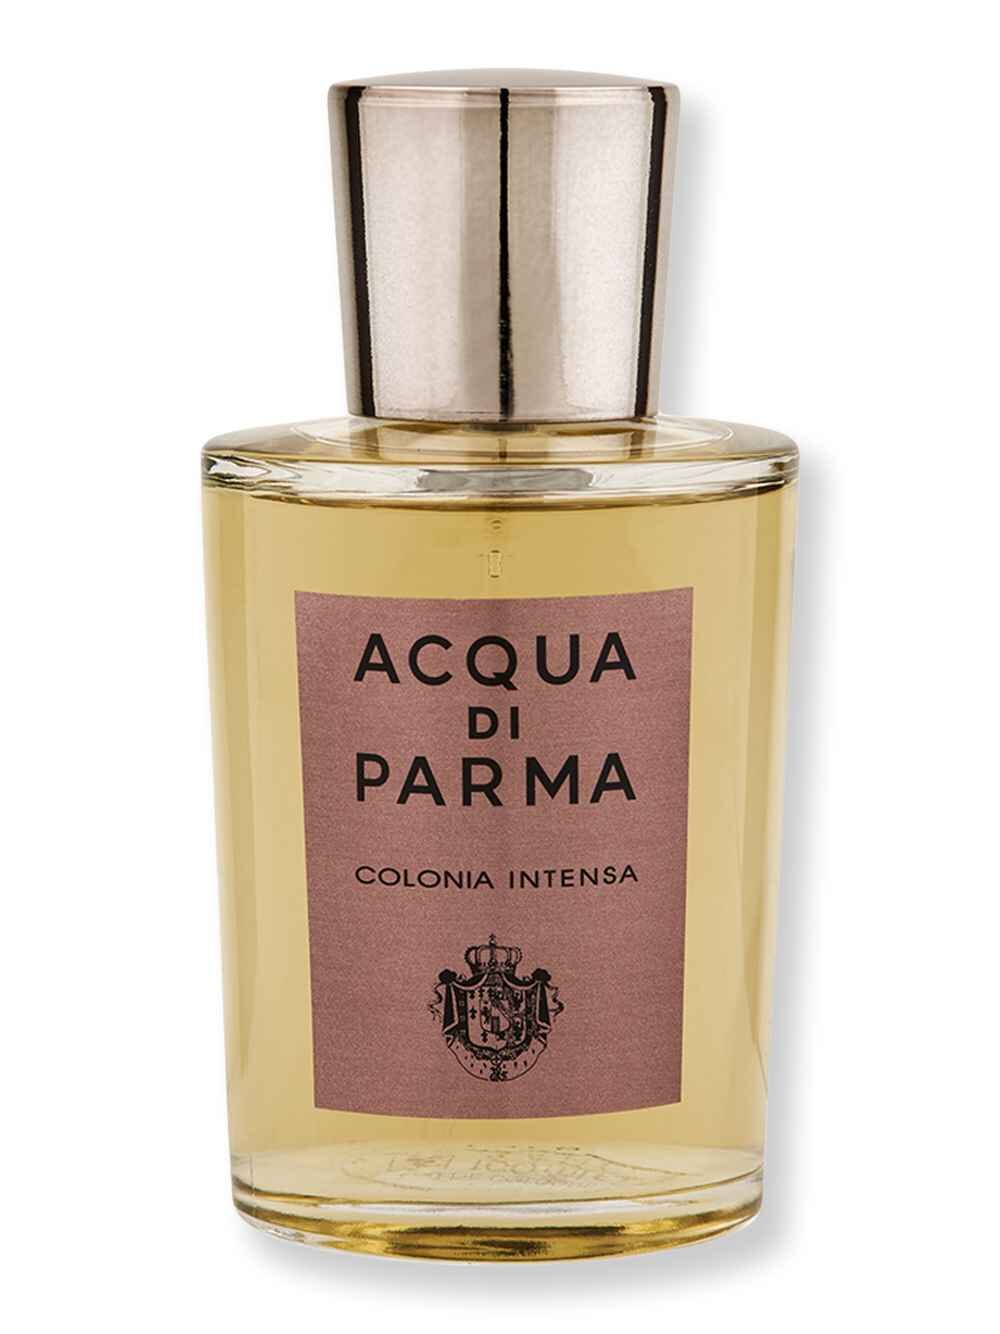 Acqua di Parma Acqua di Parma Colonia Intensa Eau de Cologne 3.4 oz100 ml Perfumes & Colognes 